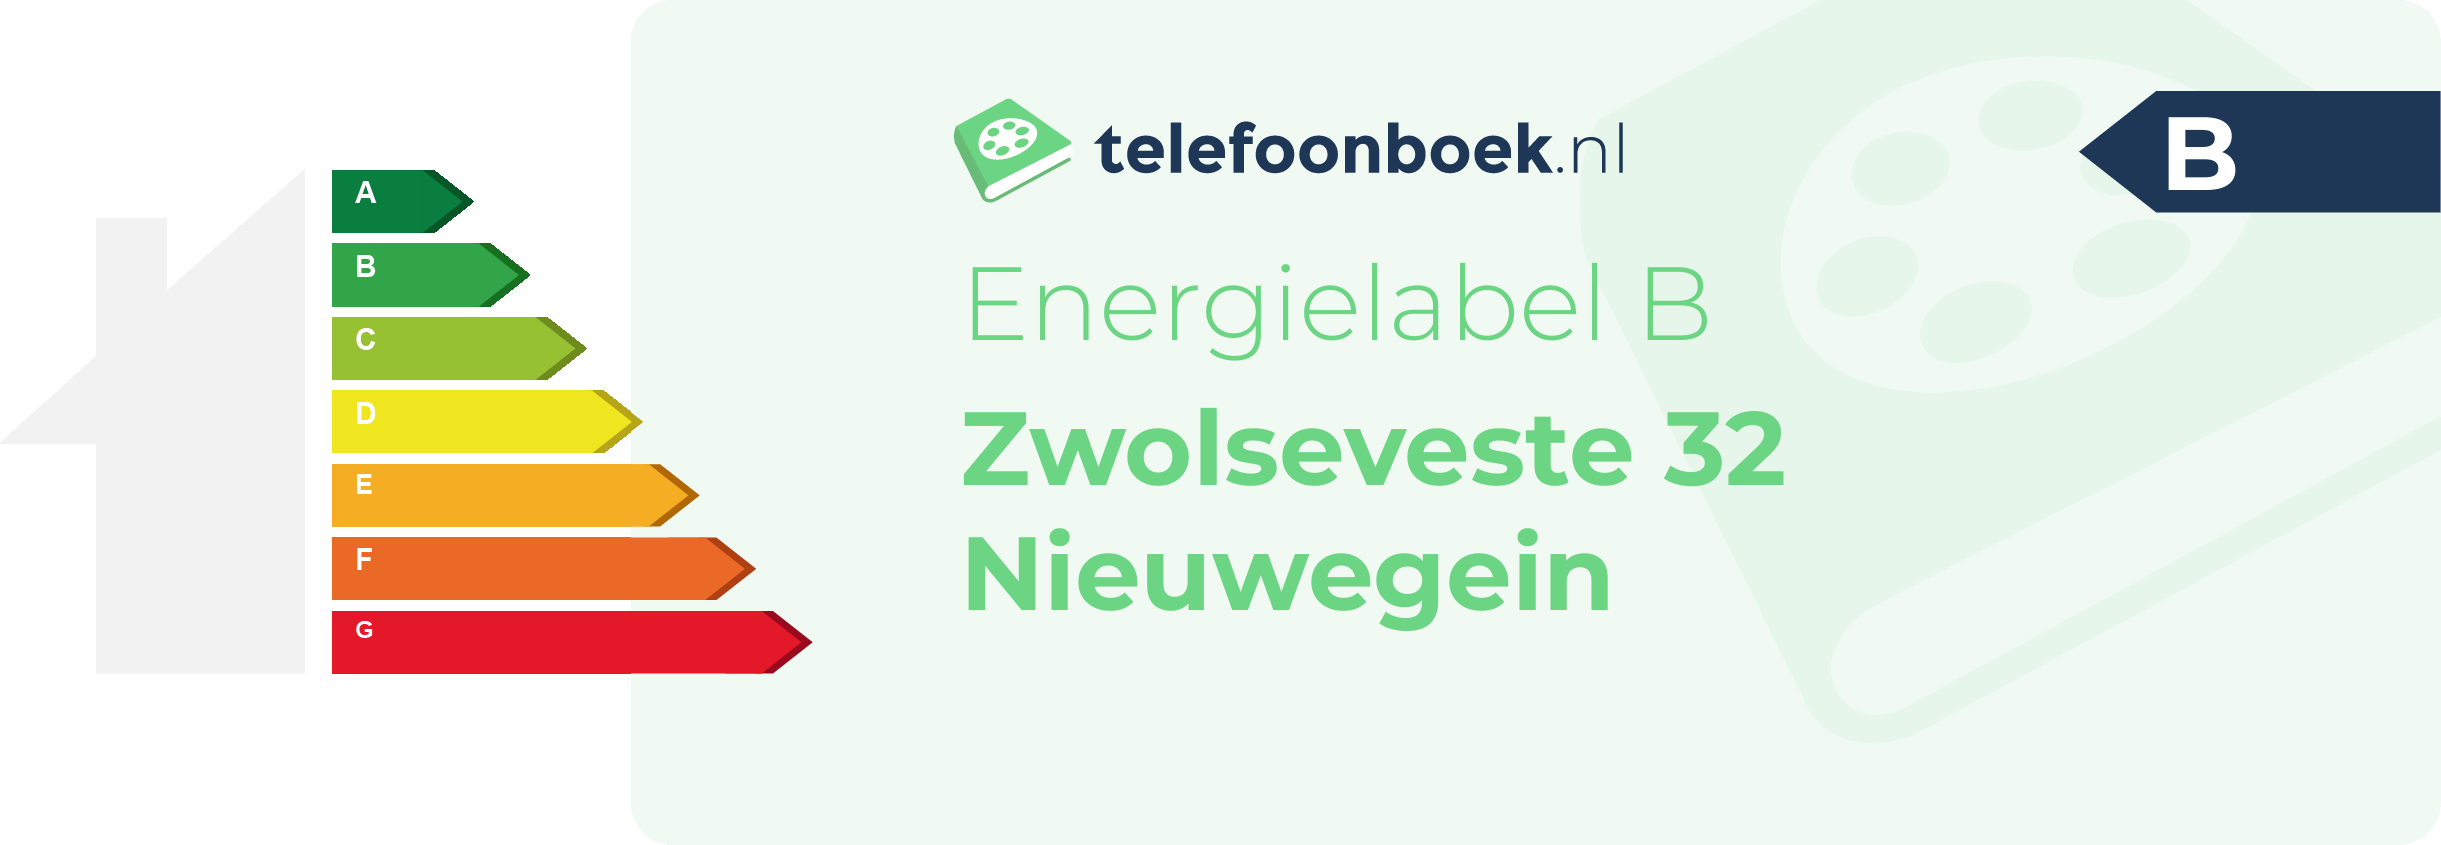 Energielabel Zwolseveste 32 Nieuwegein